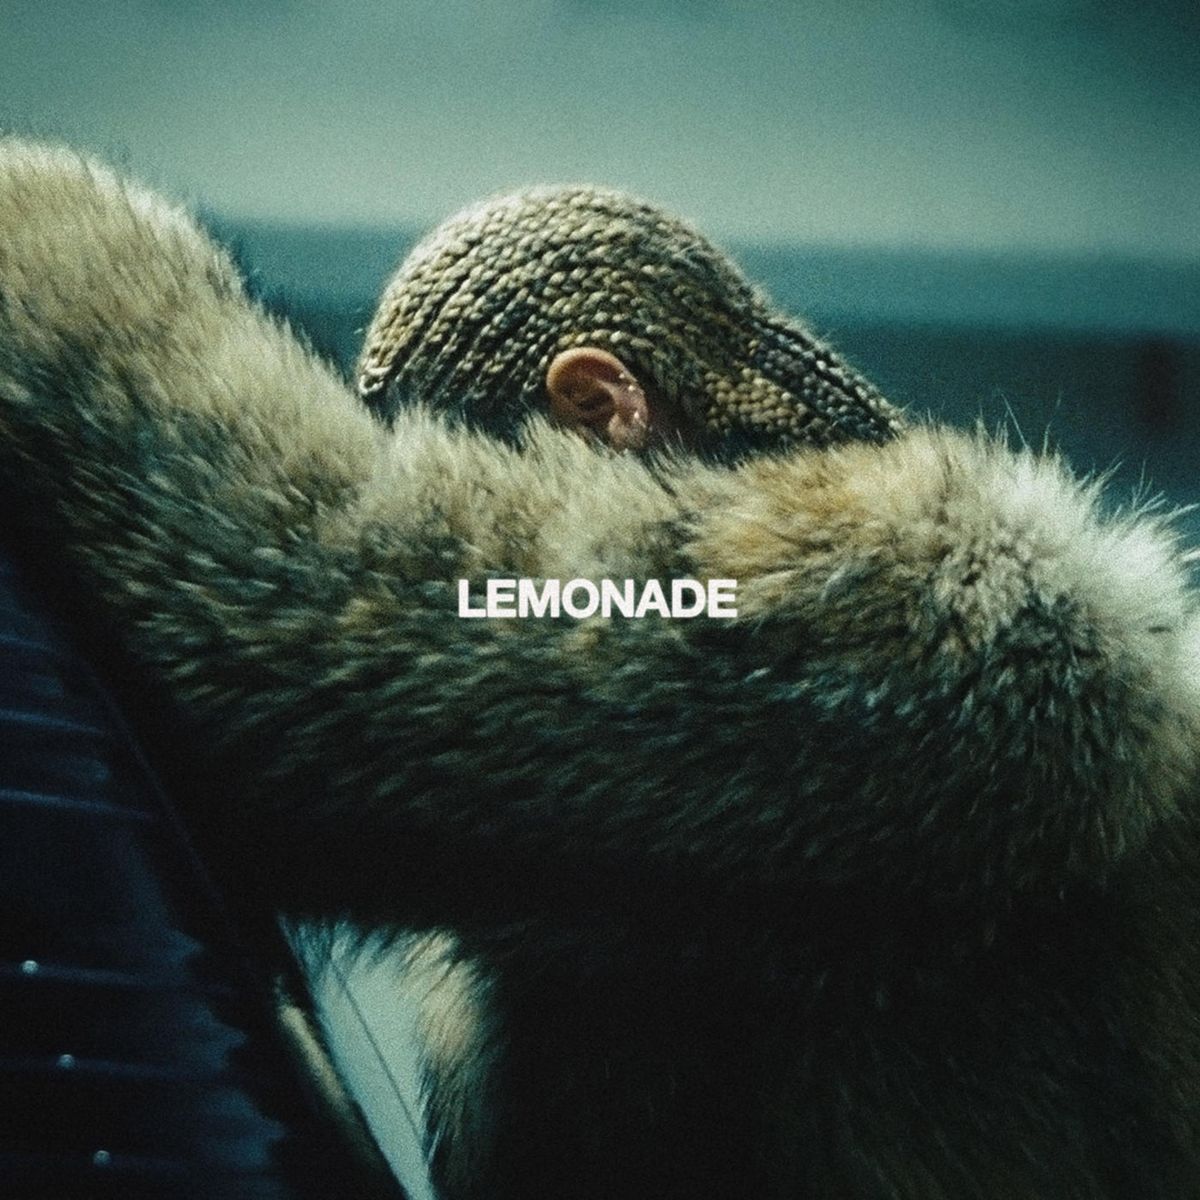 Limonadebetræk, der viser Beyonce bøjet og skjuler sit ansigt